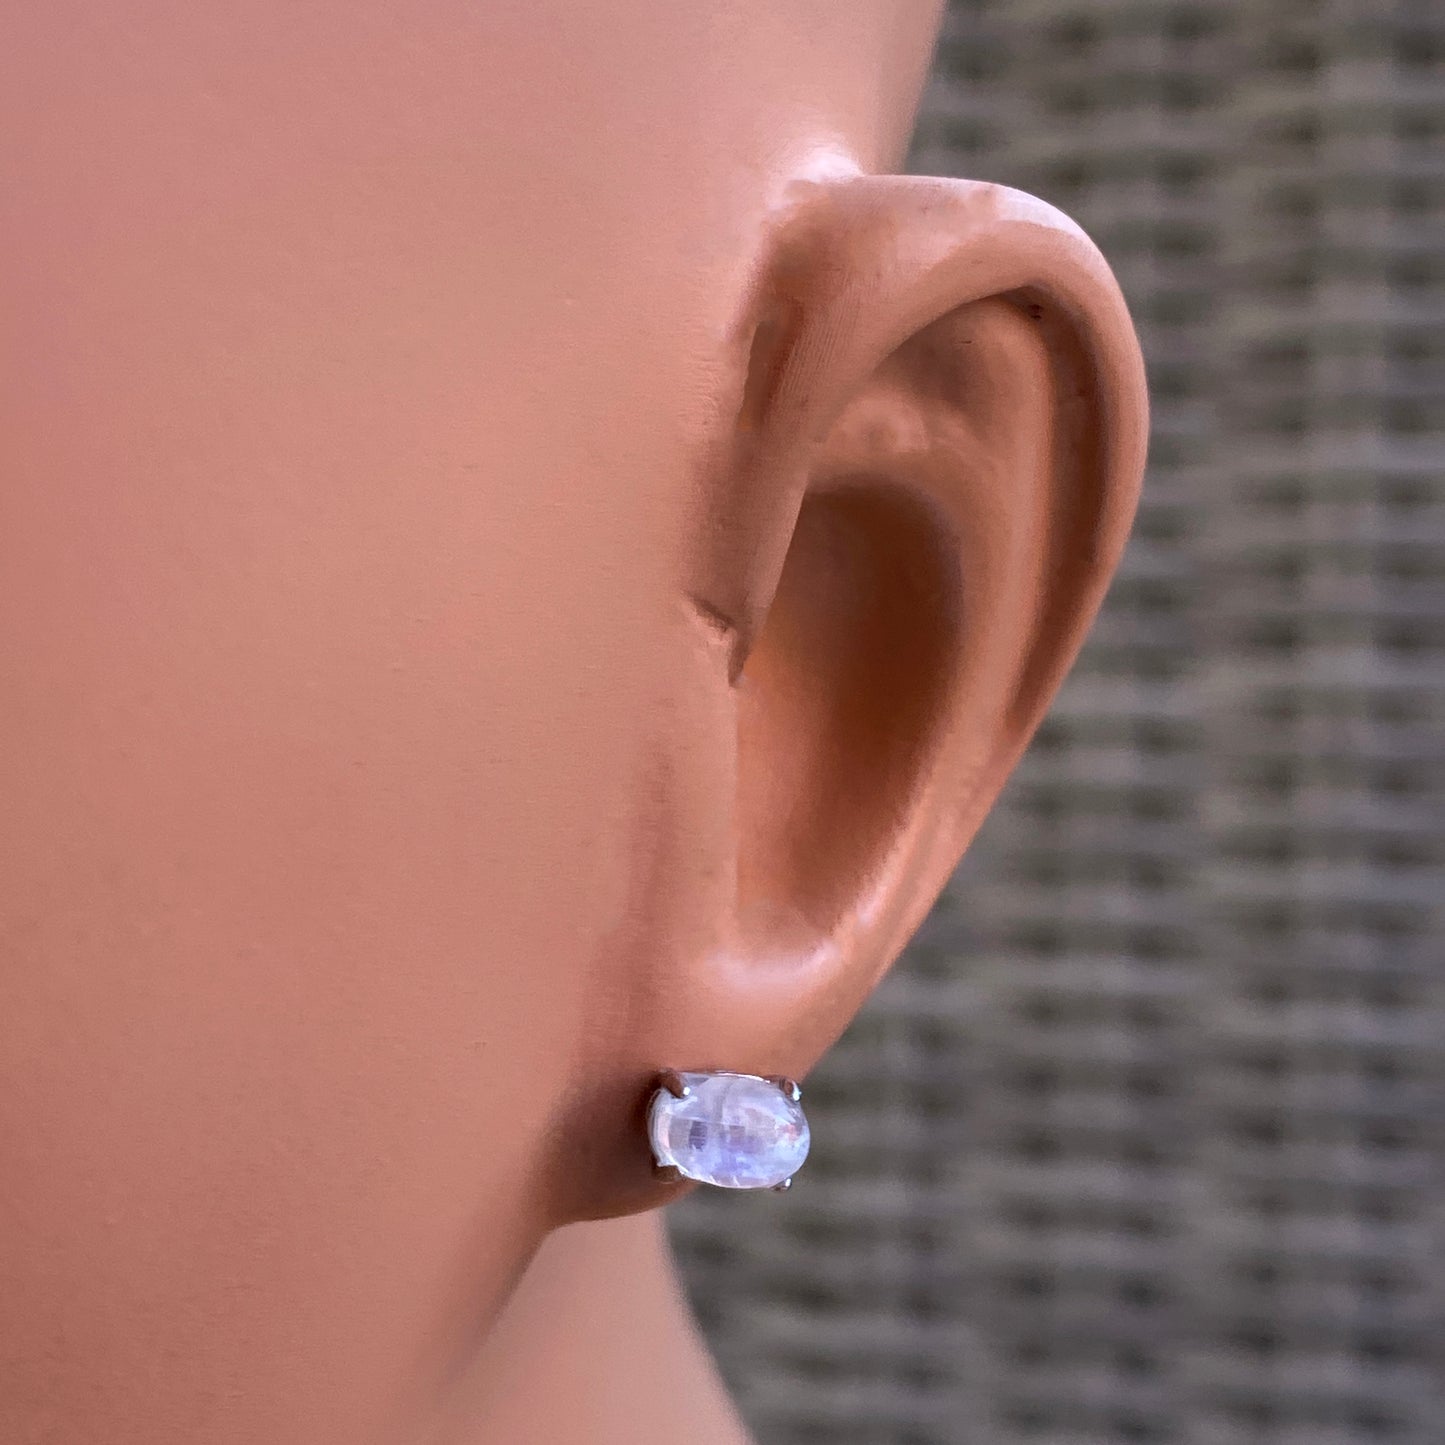 Moonstone gemstone and Sterling Silver Stud Earrings